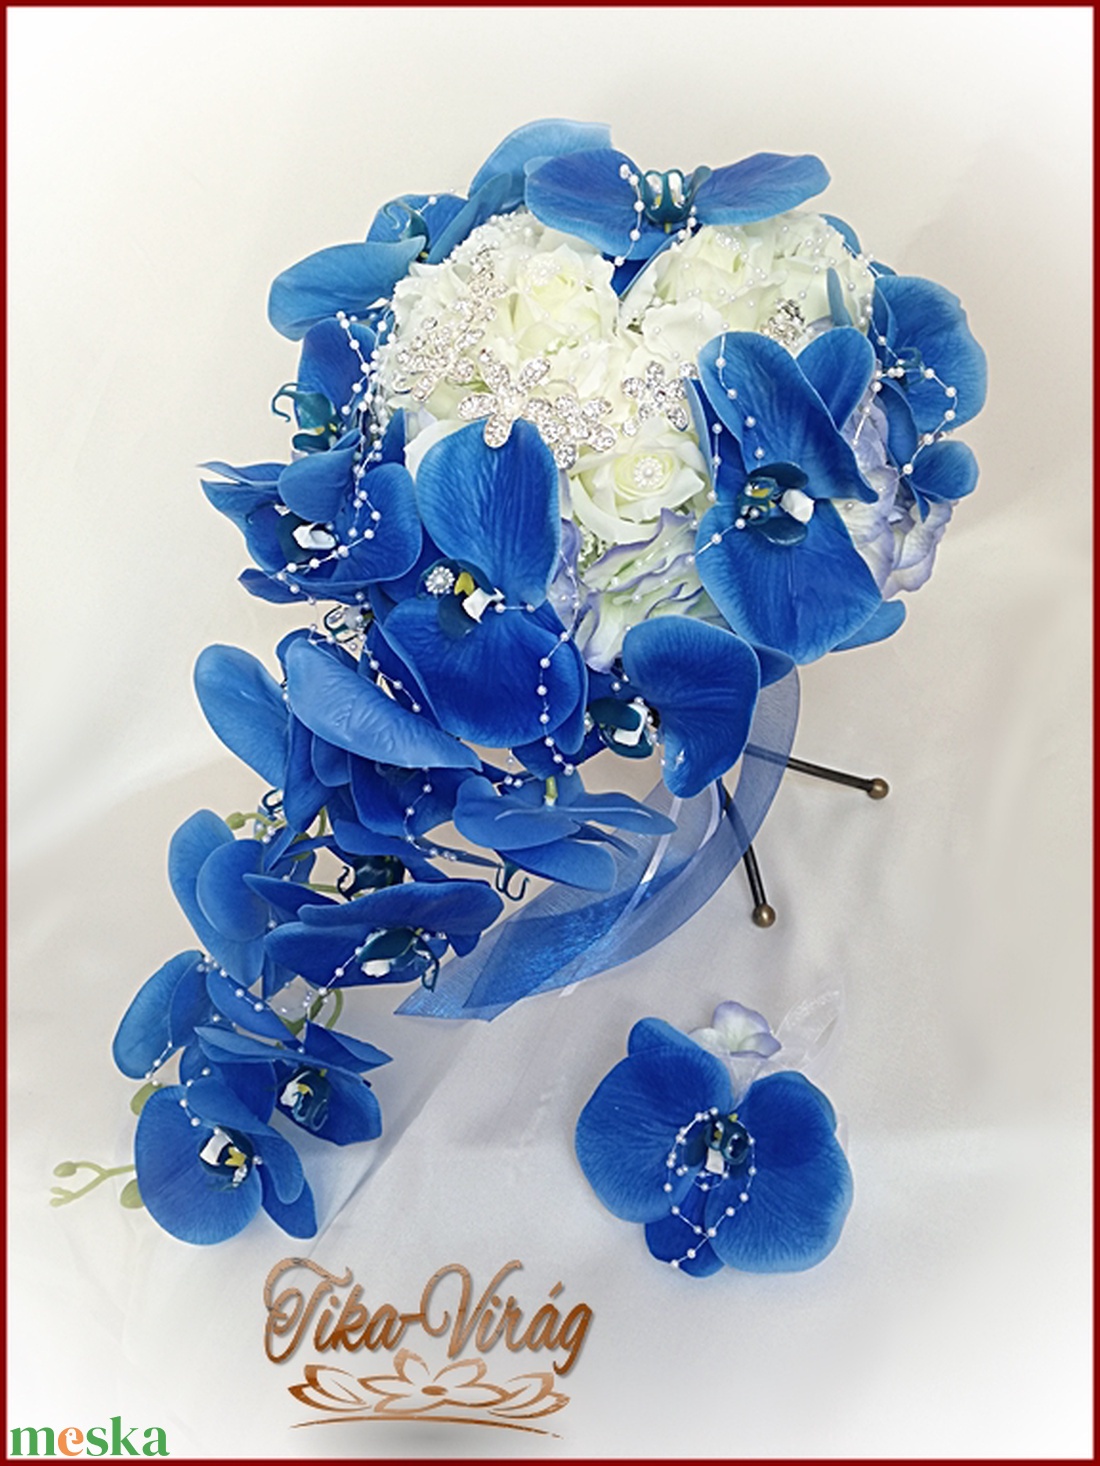 Kék orchideás örök-csepp-csokor+kitűzővel - esküvő - menyasszonyi- és dobócsokor - Meska.hu